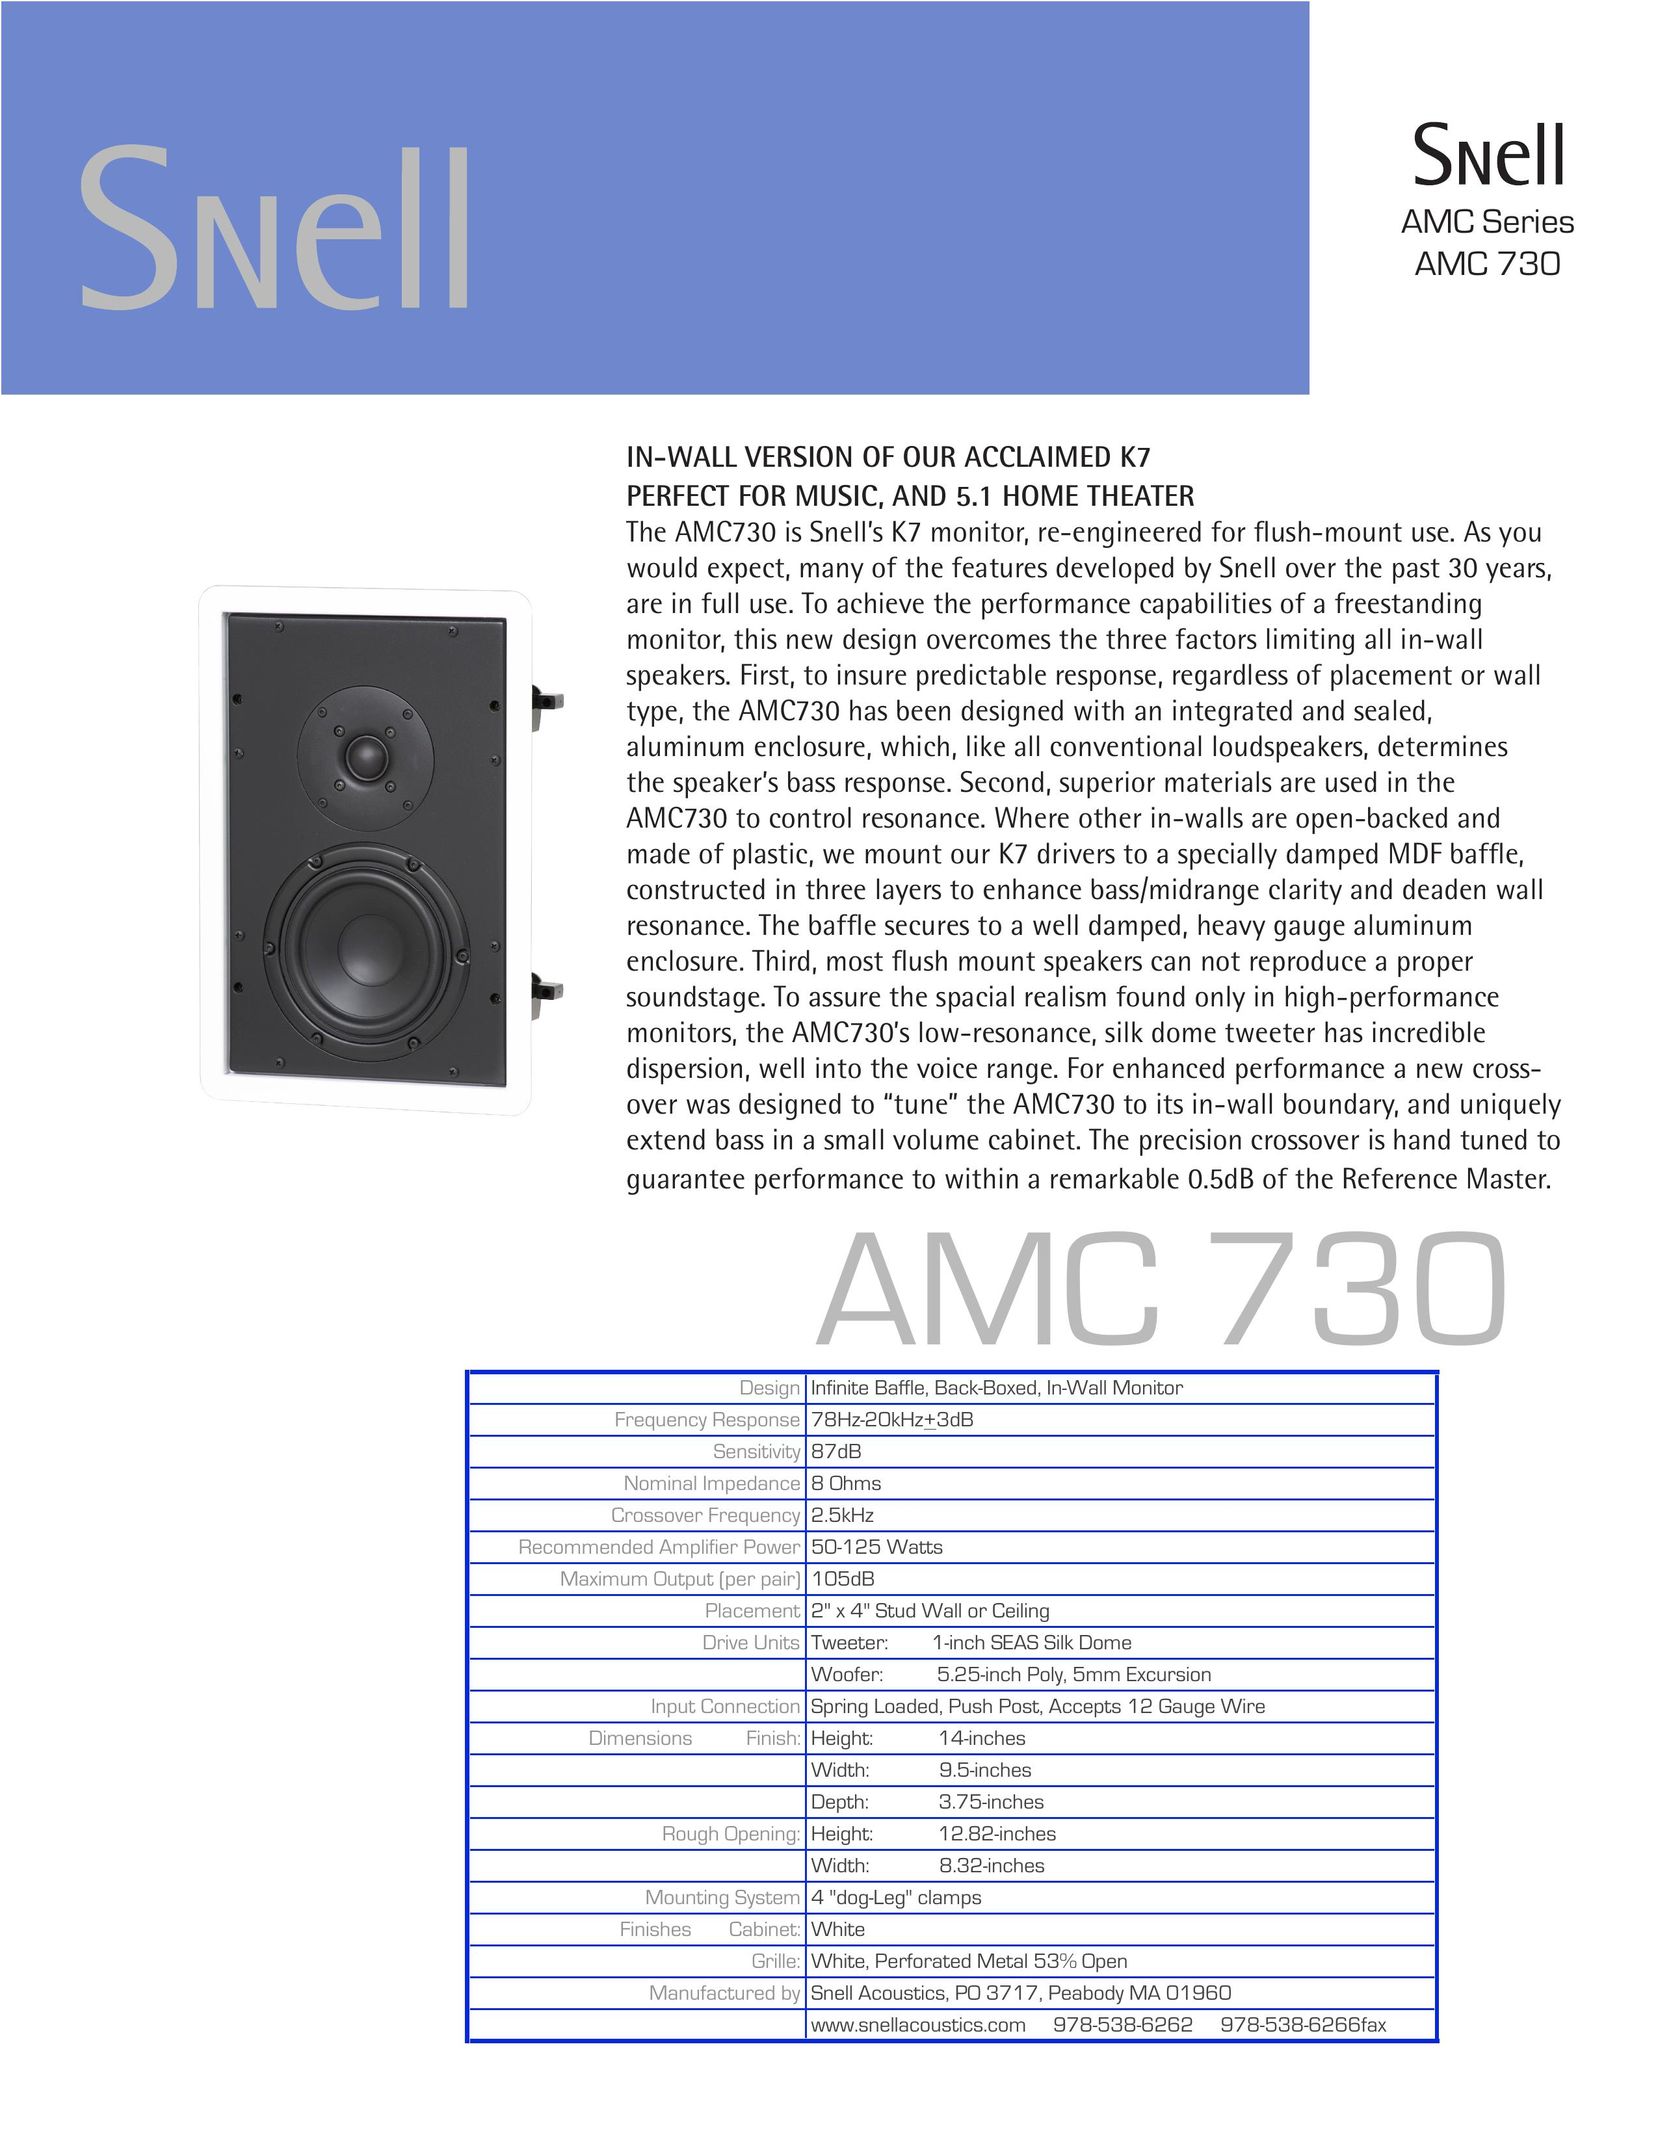 Snell Acoustics AMC 730 Speaker User Manual